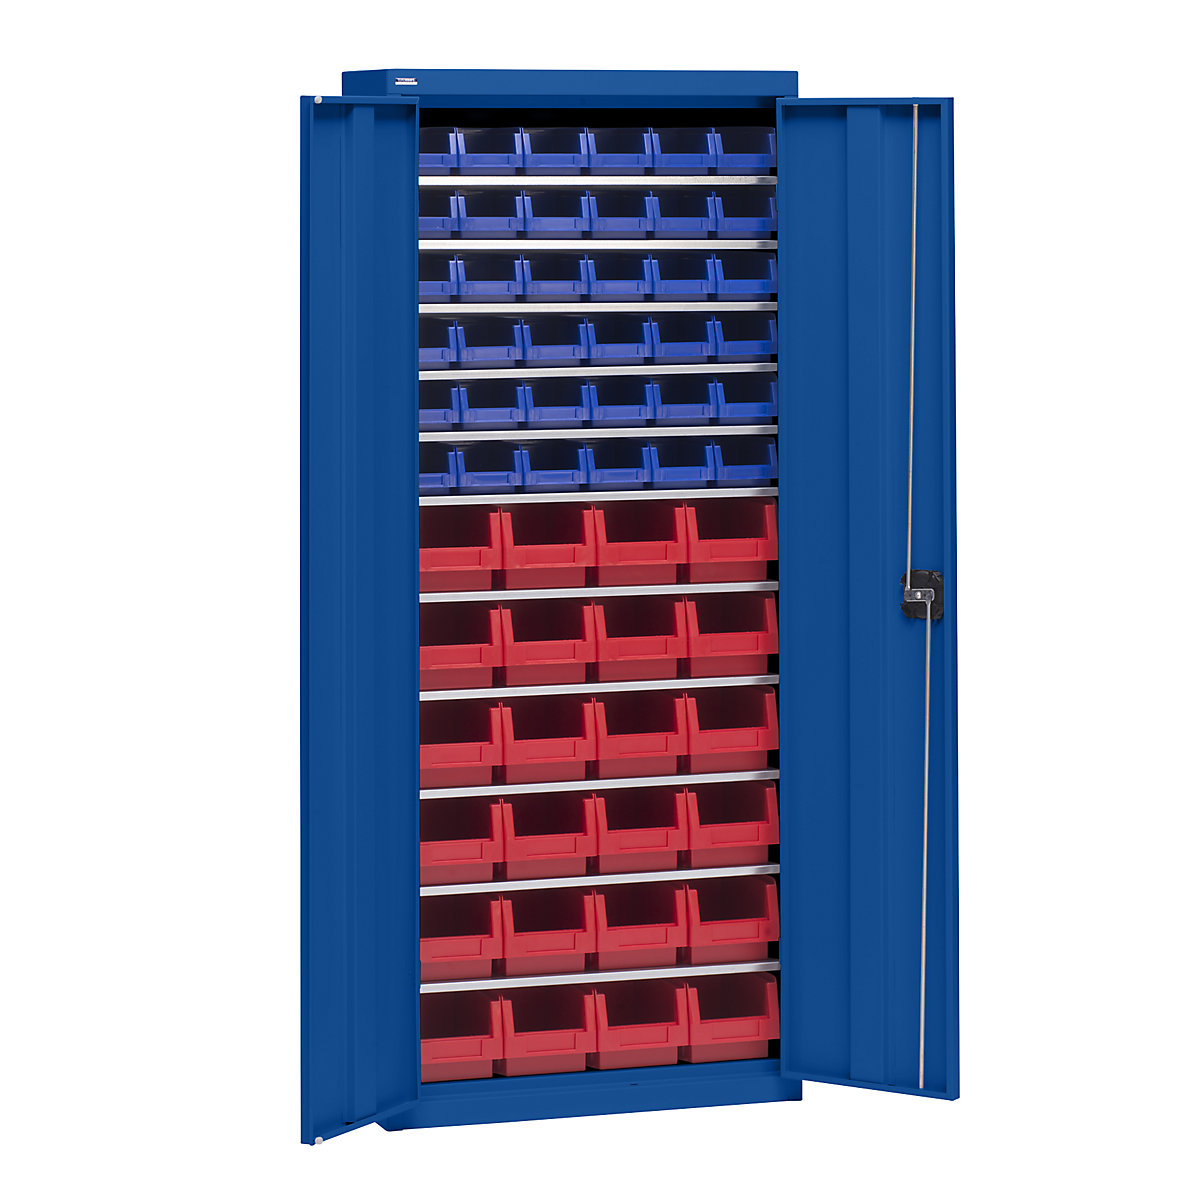 Materiaalkast met magazijnbakken – eurokraft pro, hoogte 1575 mm, 11 legborden, gentiaanblauw-7